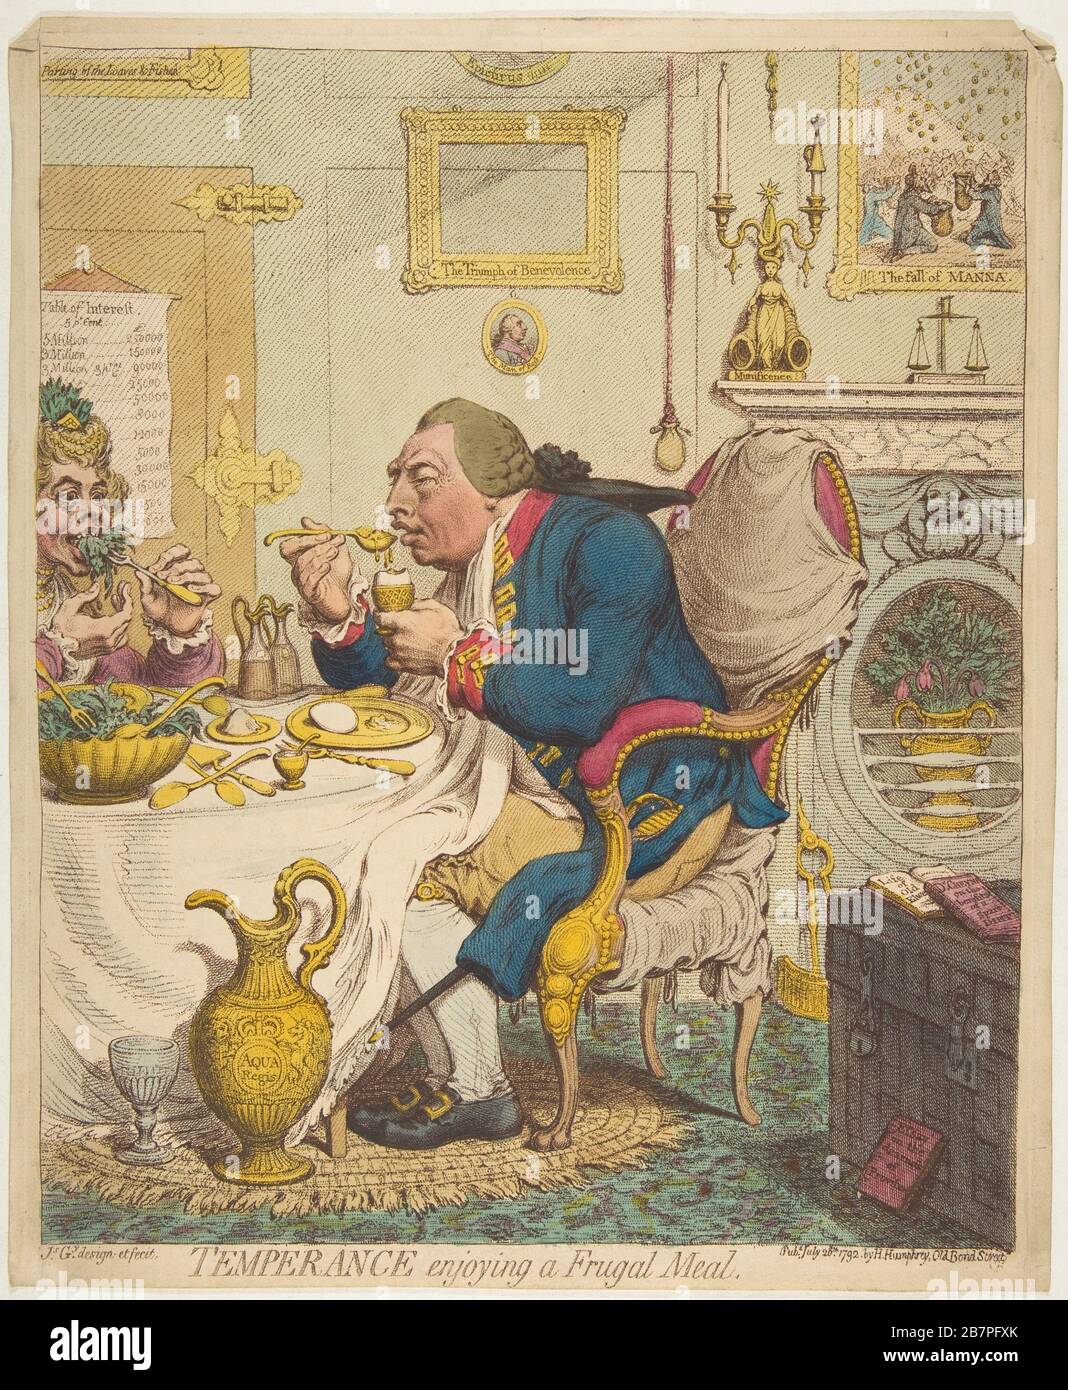 Temperance beim genießen einer frugalen Mahlzeit, 28. Juli 1792. Stockfoto